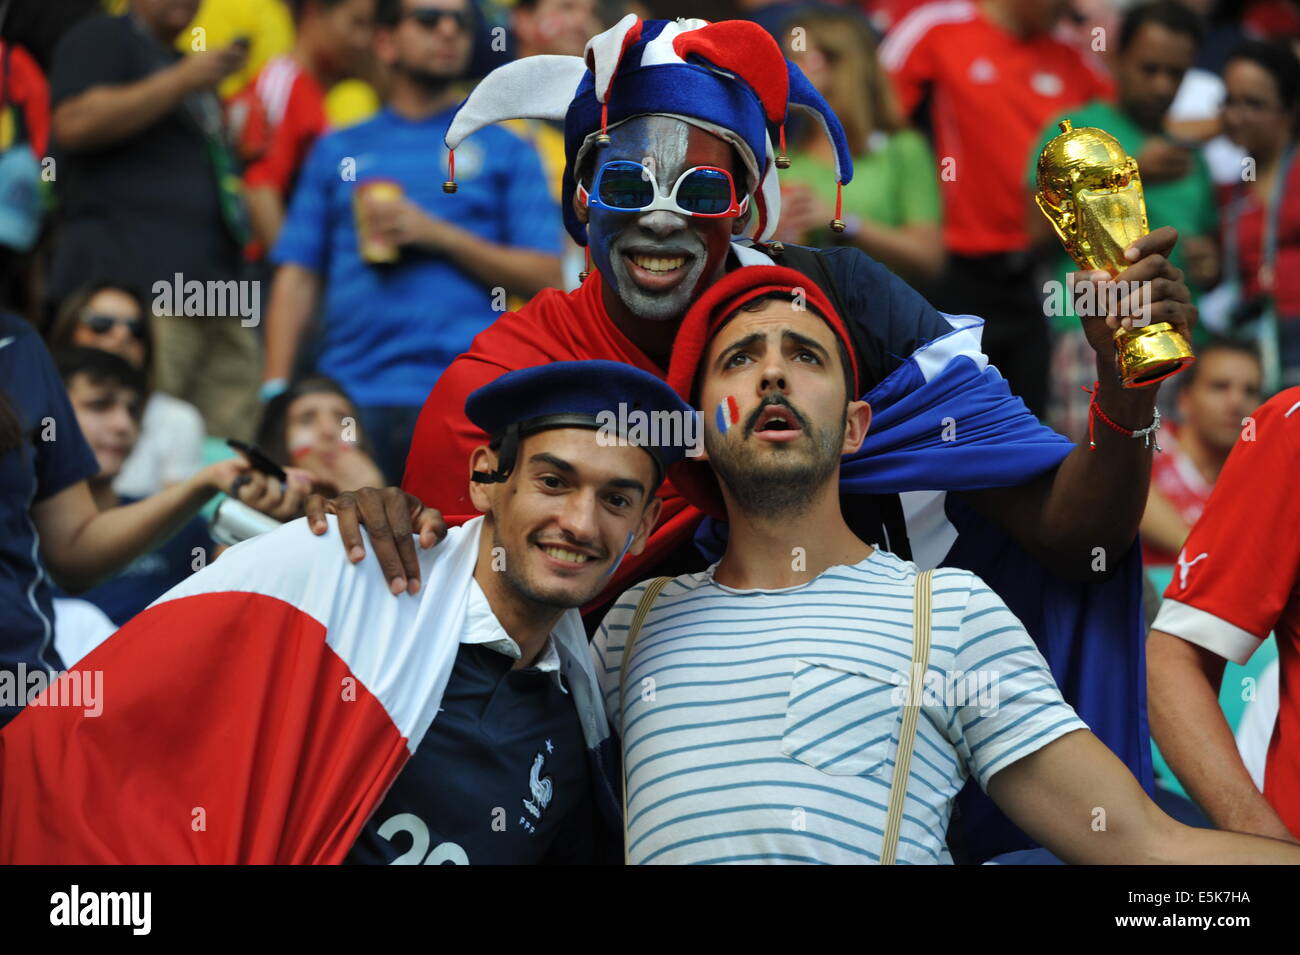 Coupe du monde de la FIFA 2014, supporters français, Brésil Banque D'Images